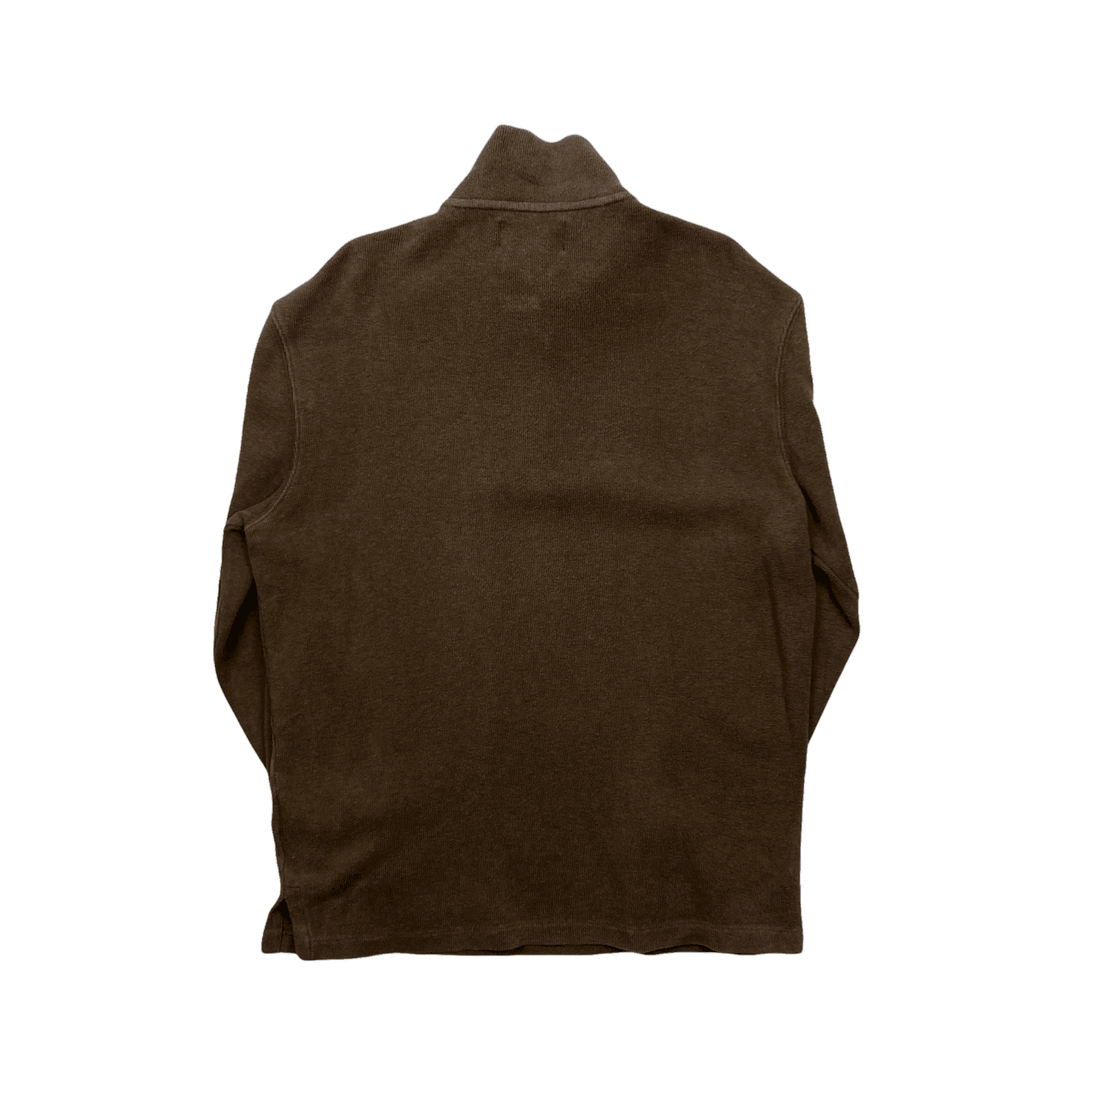 Vintage 90s Brown Polo Ralph Lauren Quarter Zip Sweatshirt - Medium - The Streetwear Studio